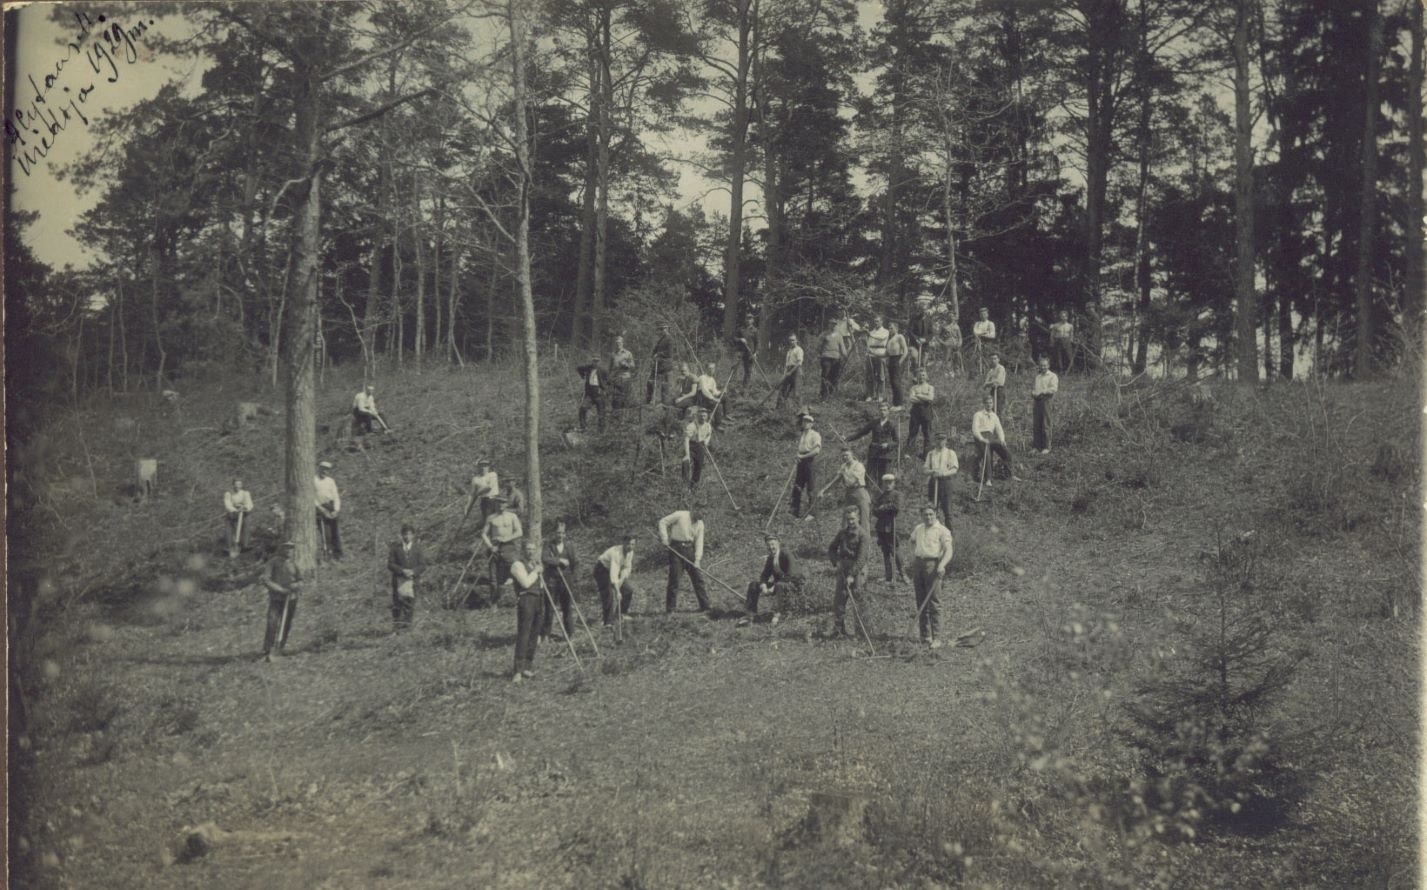 Miško atkūrimo ir įveisimo raida Lietuvoje per praėjusį šimtmetį